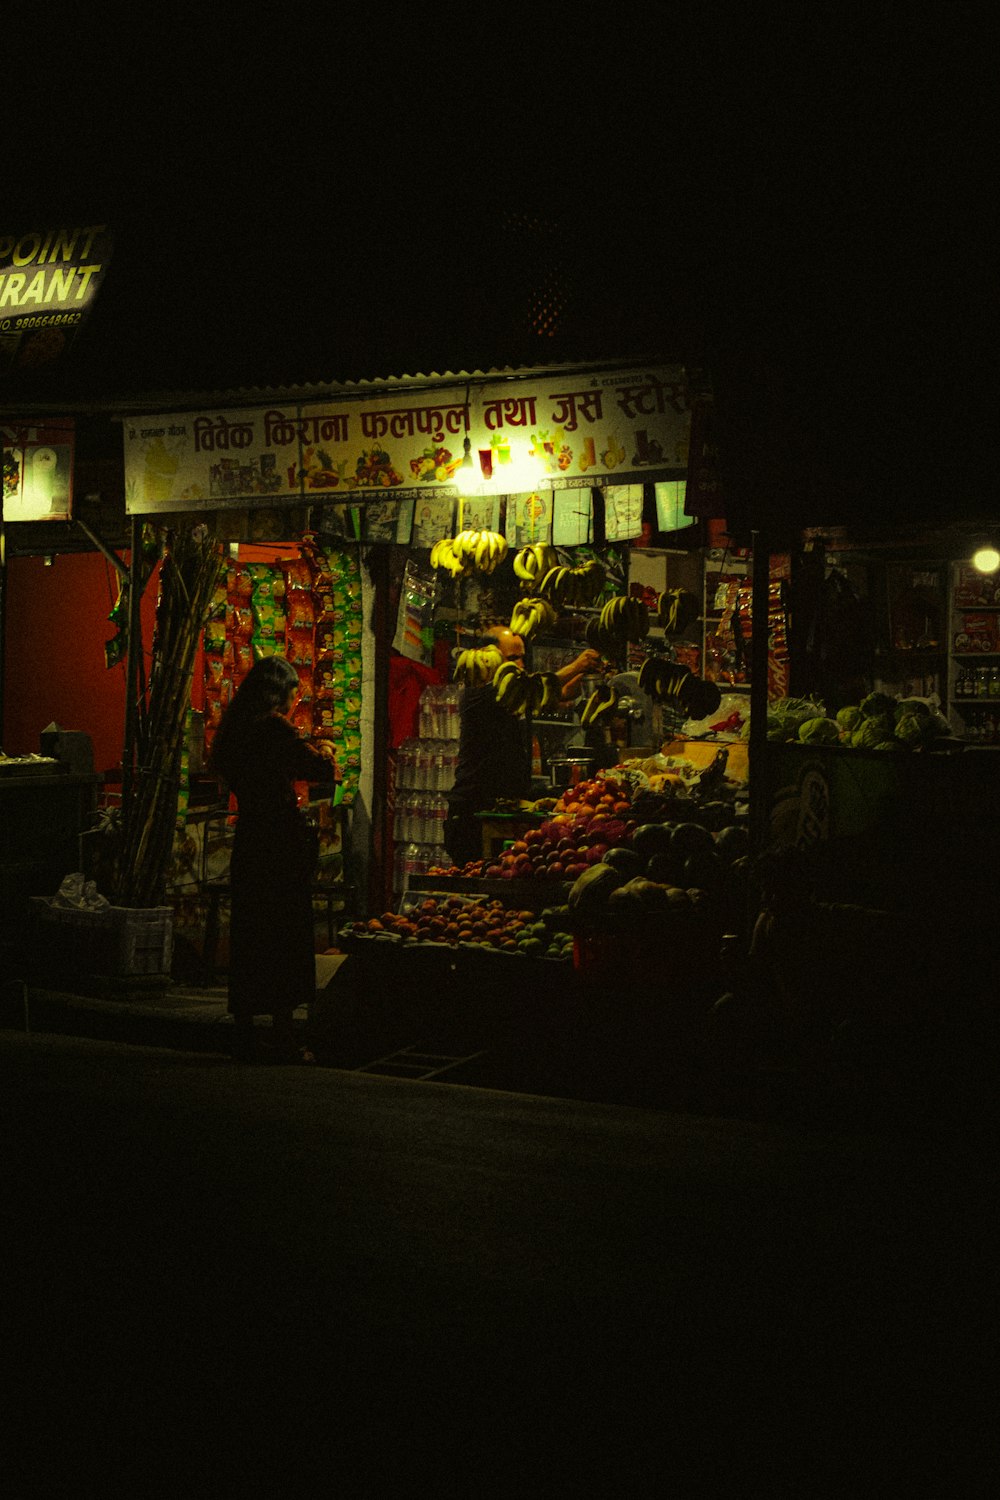 Una persona parada frente a un puesto de frutas por la noche